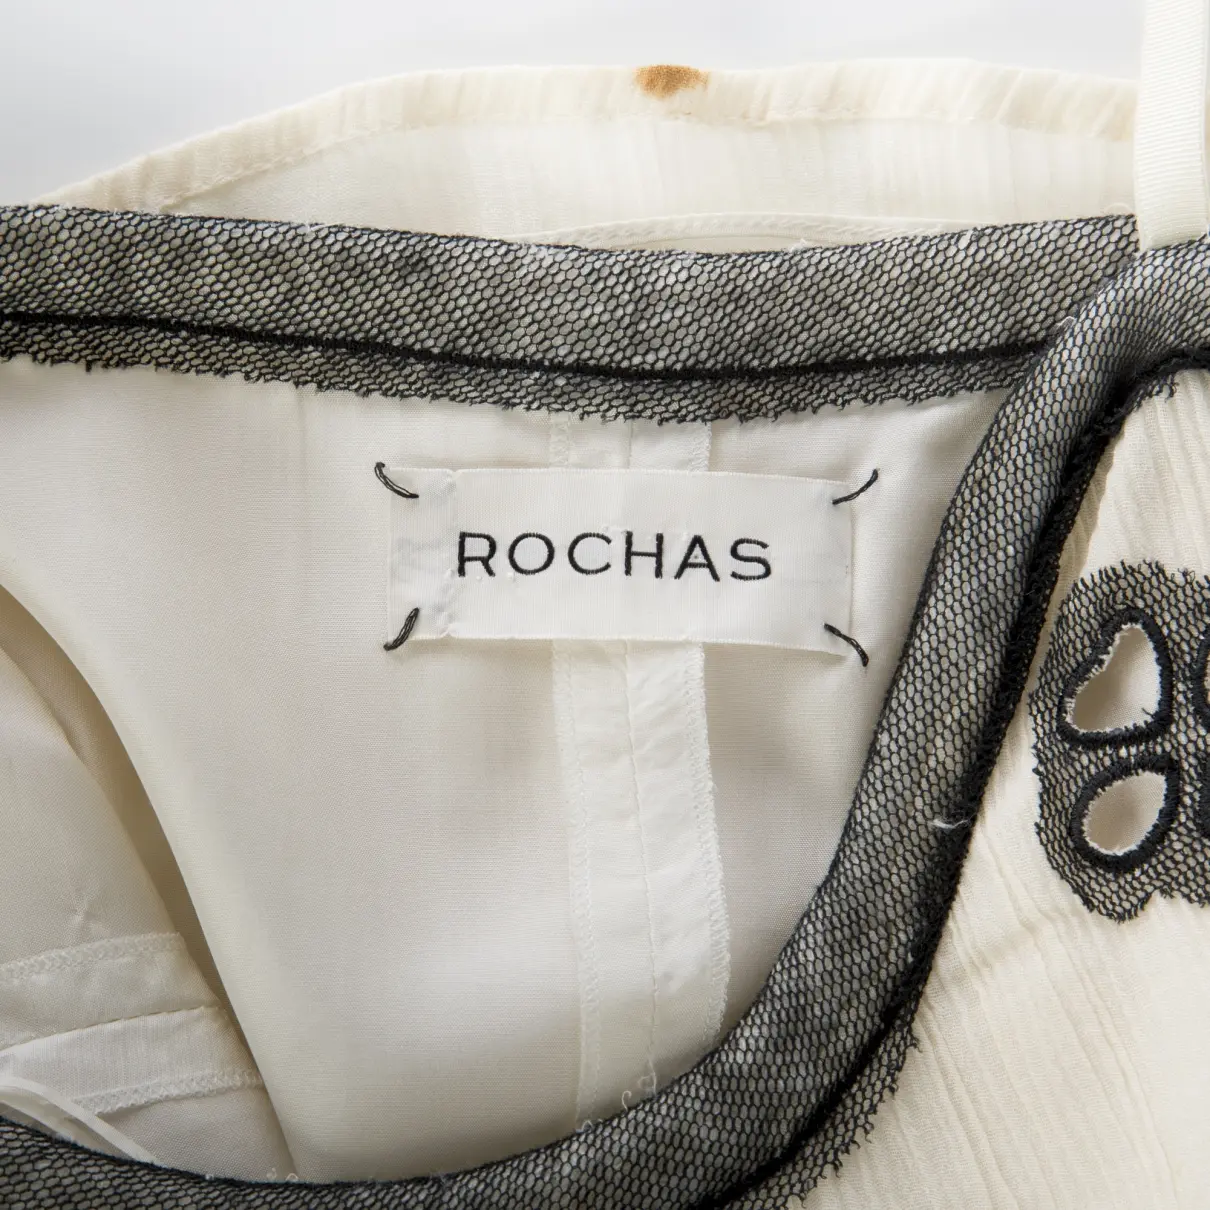 Buy Rochas MINI DRESS online